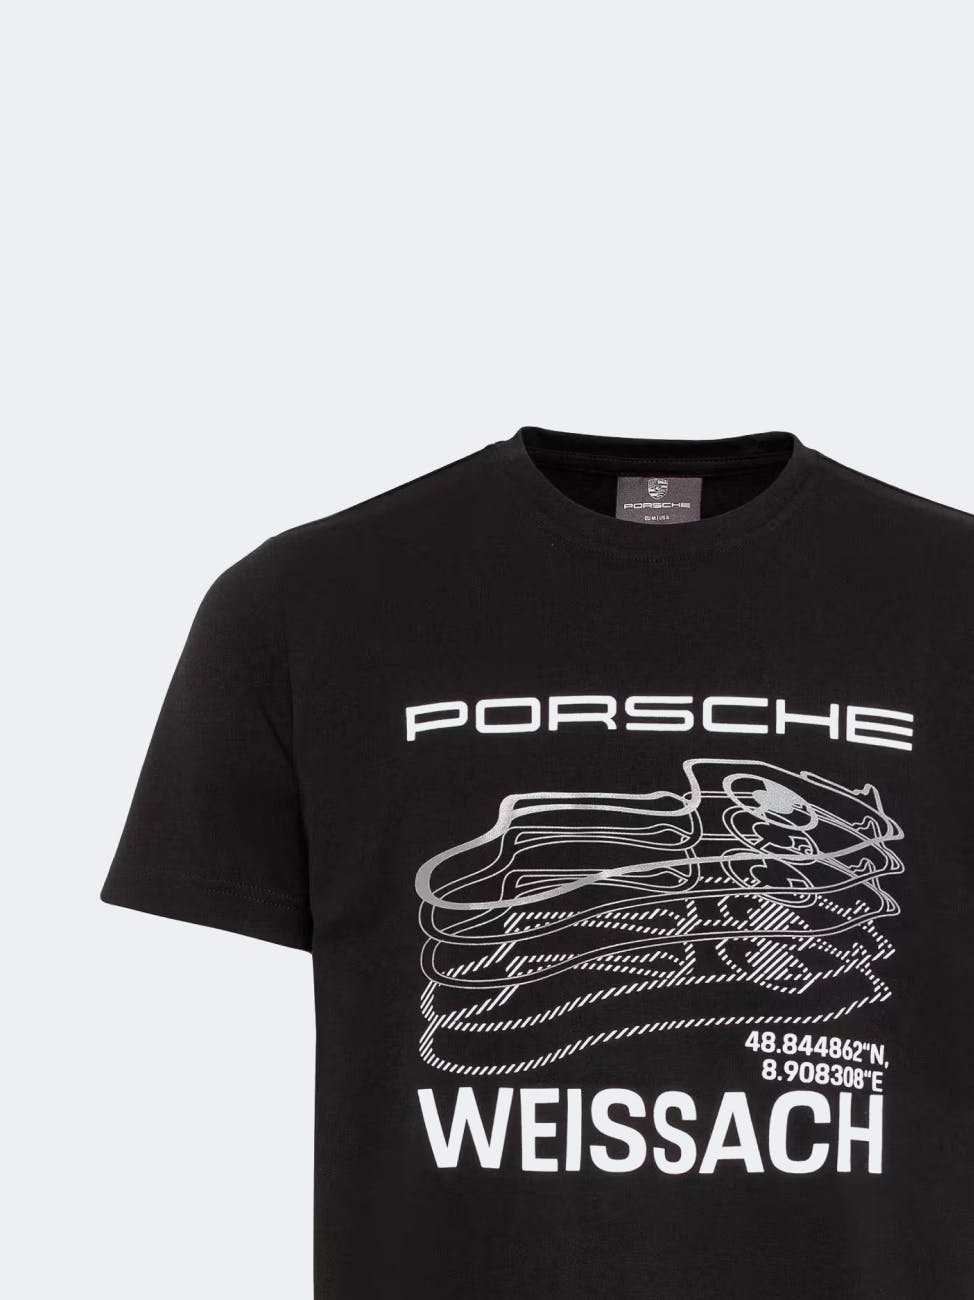 Accessoires Porsche Porsche Design